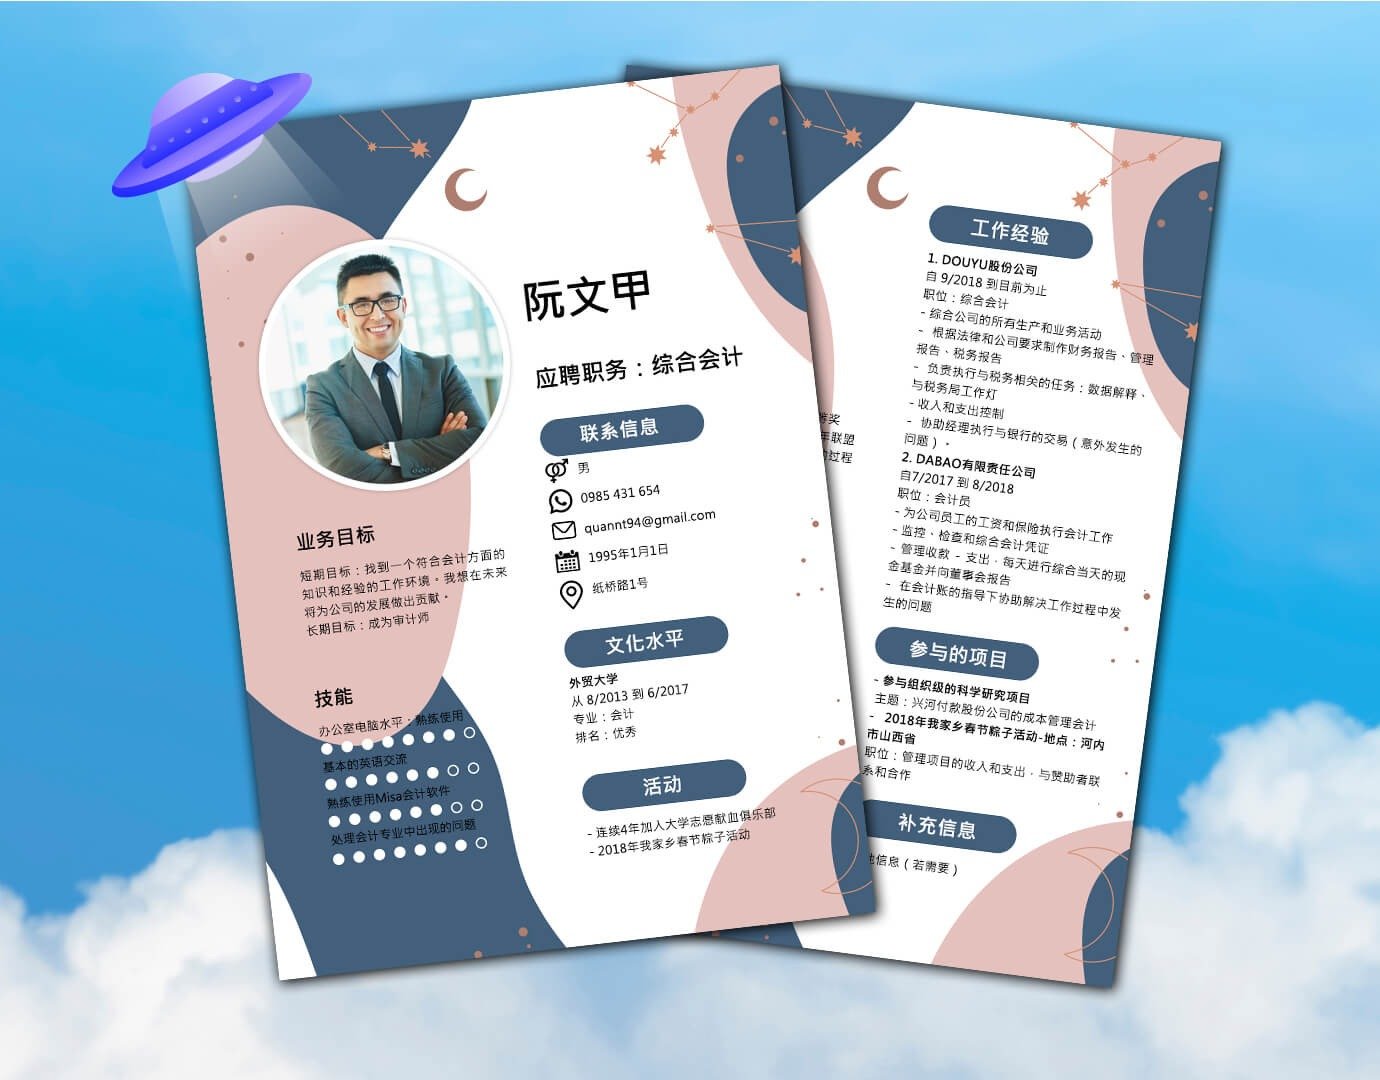 Một mẫu CV xin việc tiếng Trung mà bạn có thể tham khảo